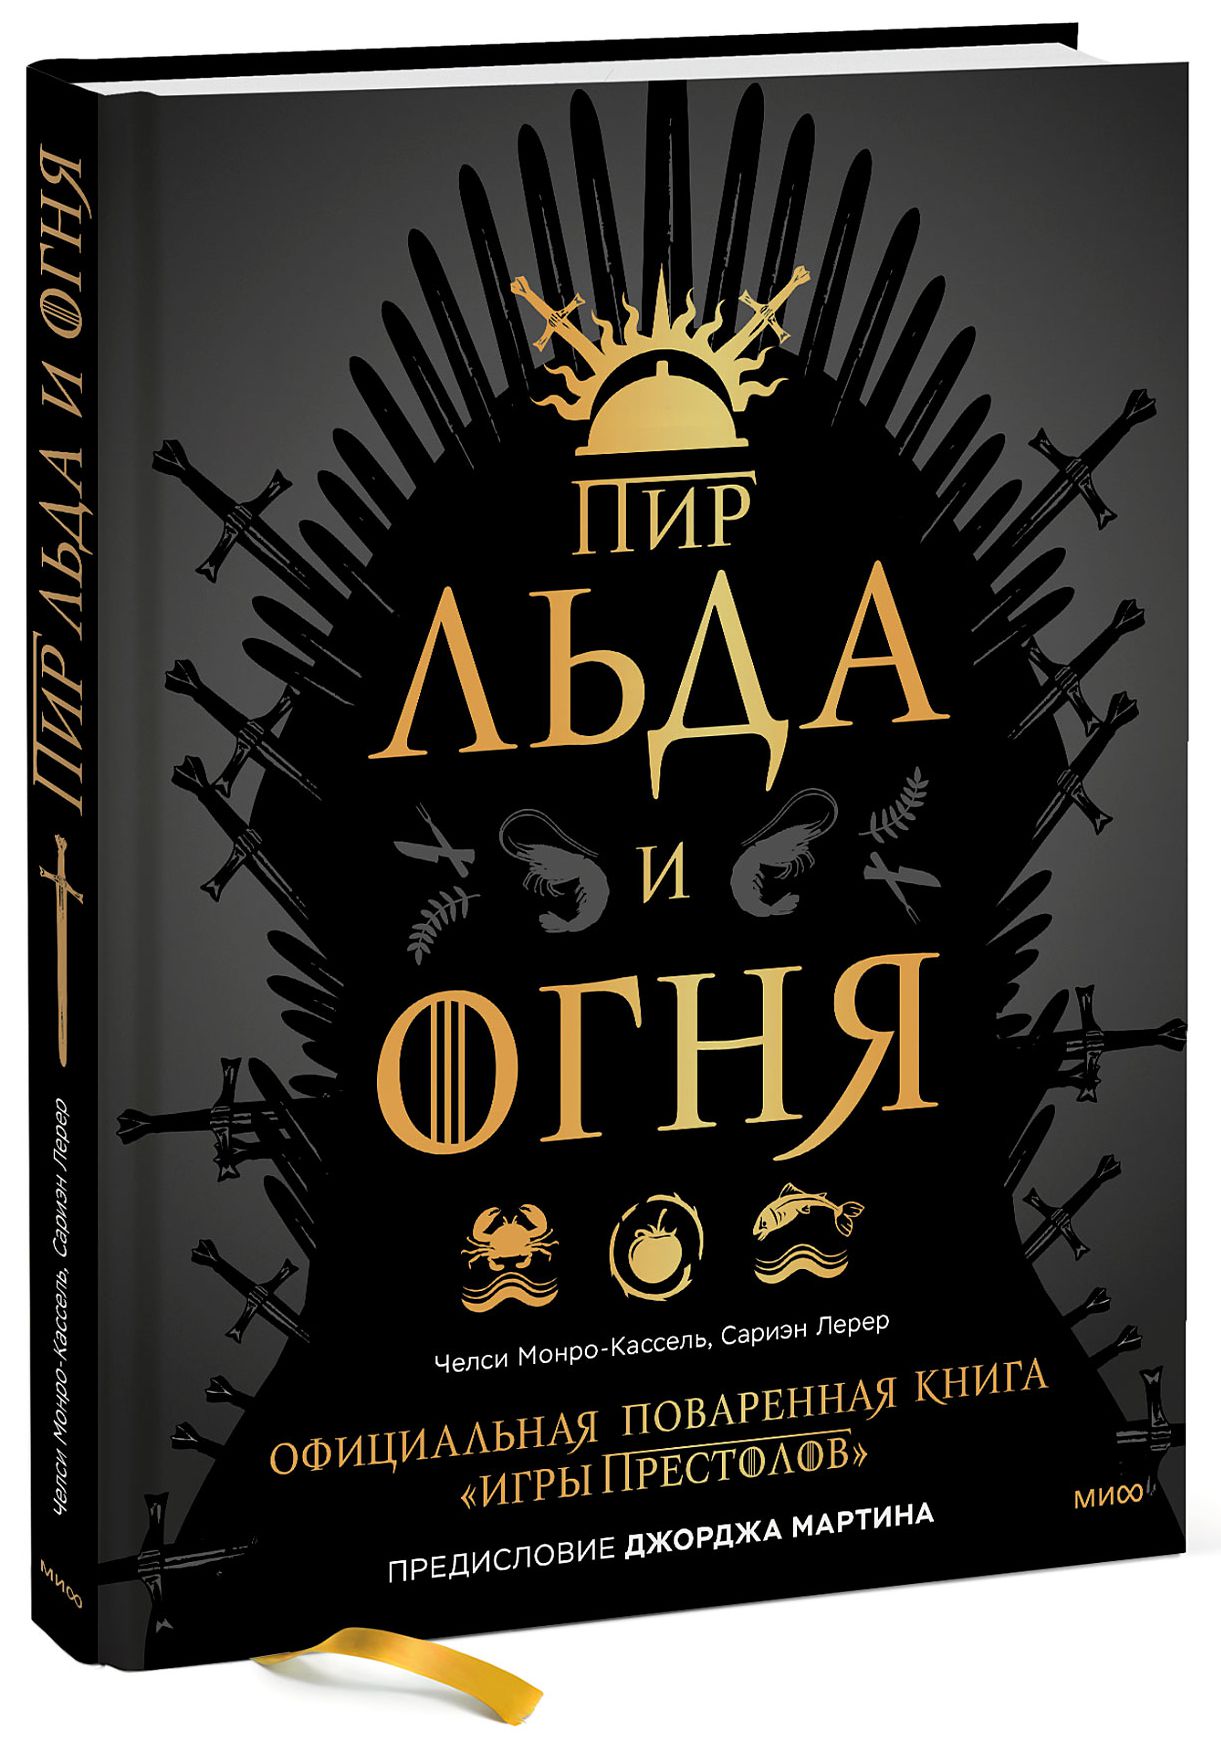 Челси Монро-Кассель Пир Льда и Огня: Официальная поваренная книга «Игры престолов»